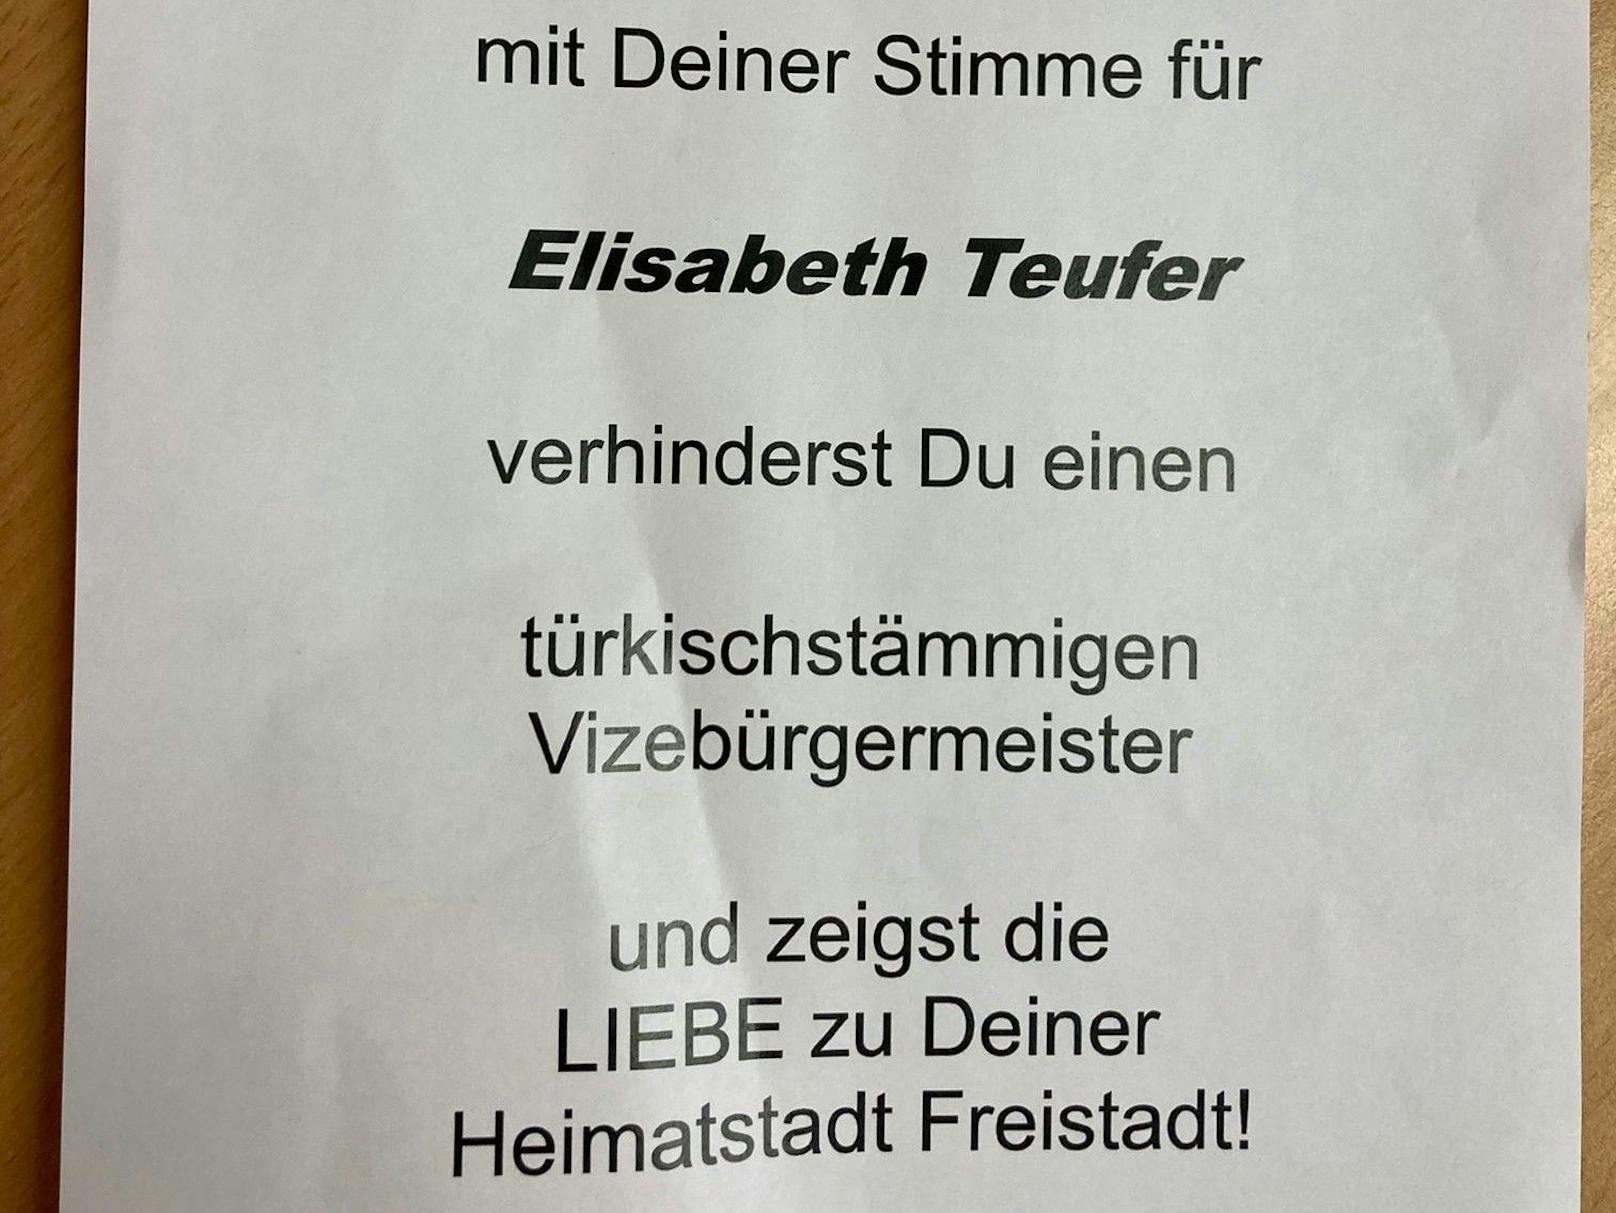 Mit diesem anonymen Flugblatt wirbt ein Unbekannter für Freistadts Bürgermeisterin Elisabeth Teufer.